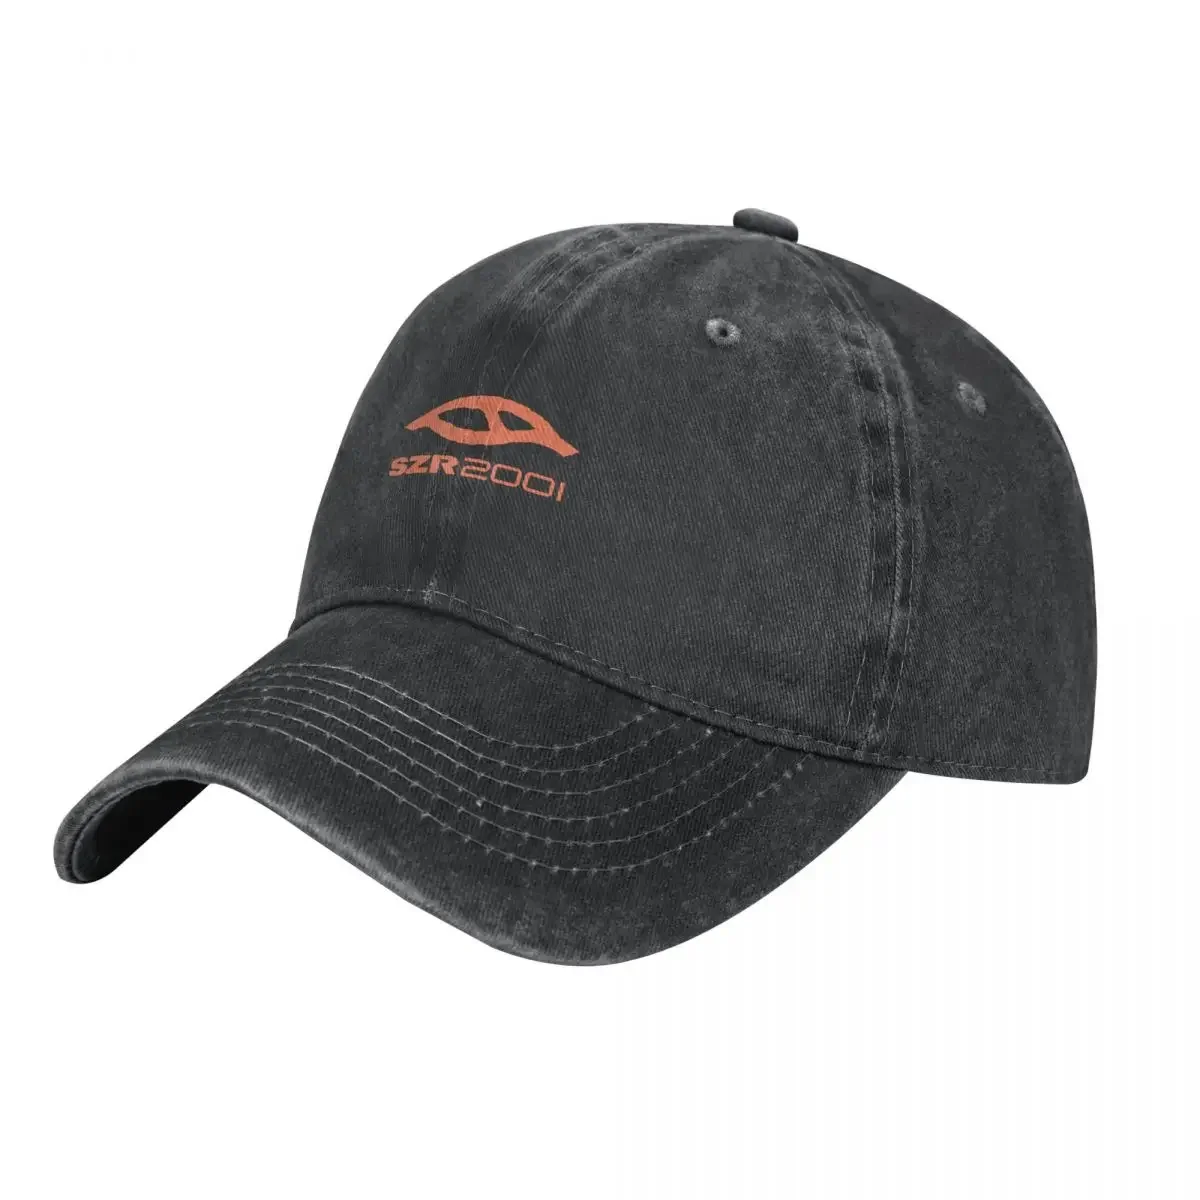 

Ковбойская шапка с логотипом szr2001, роскошная шапка, Кепка в стиле милитари, мужская, женская, Пляжная, мужская Кепка с козырьком